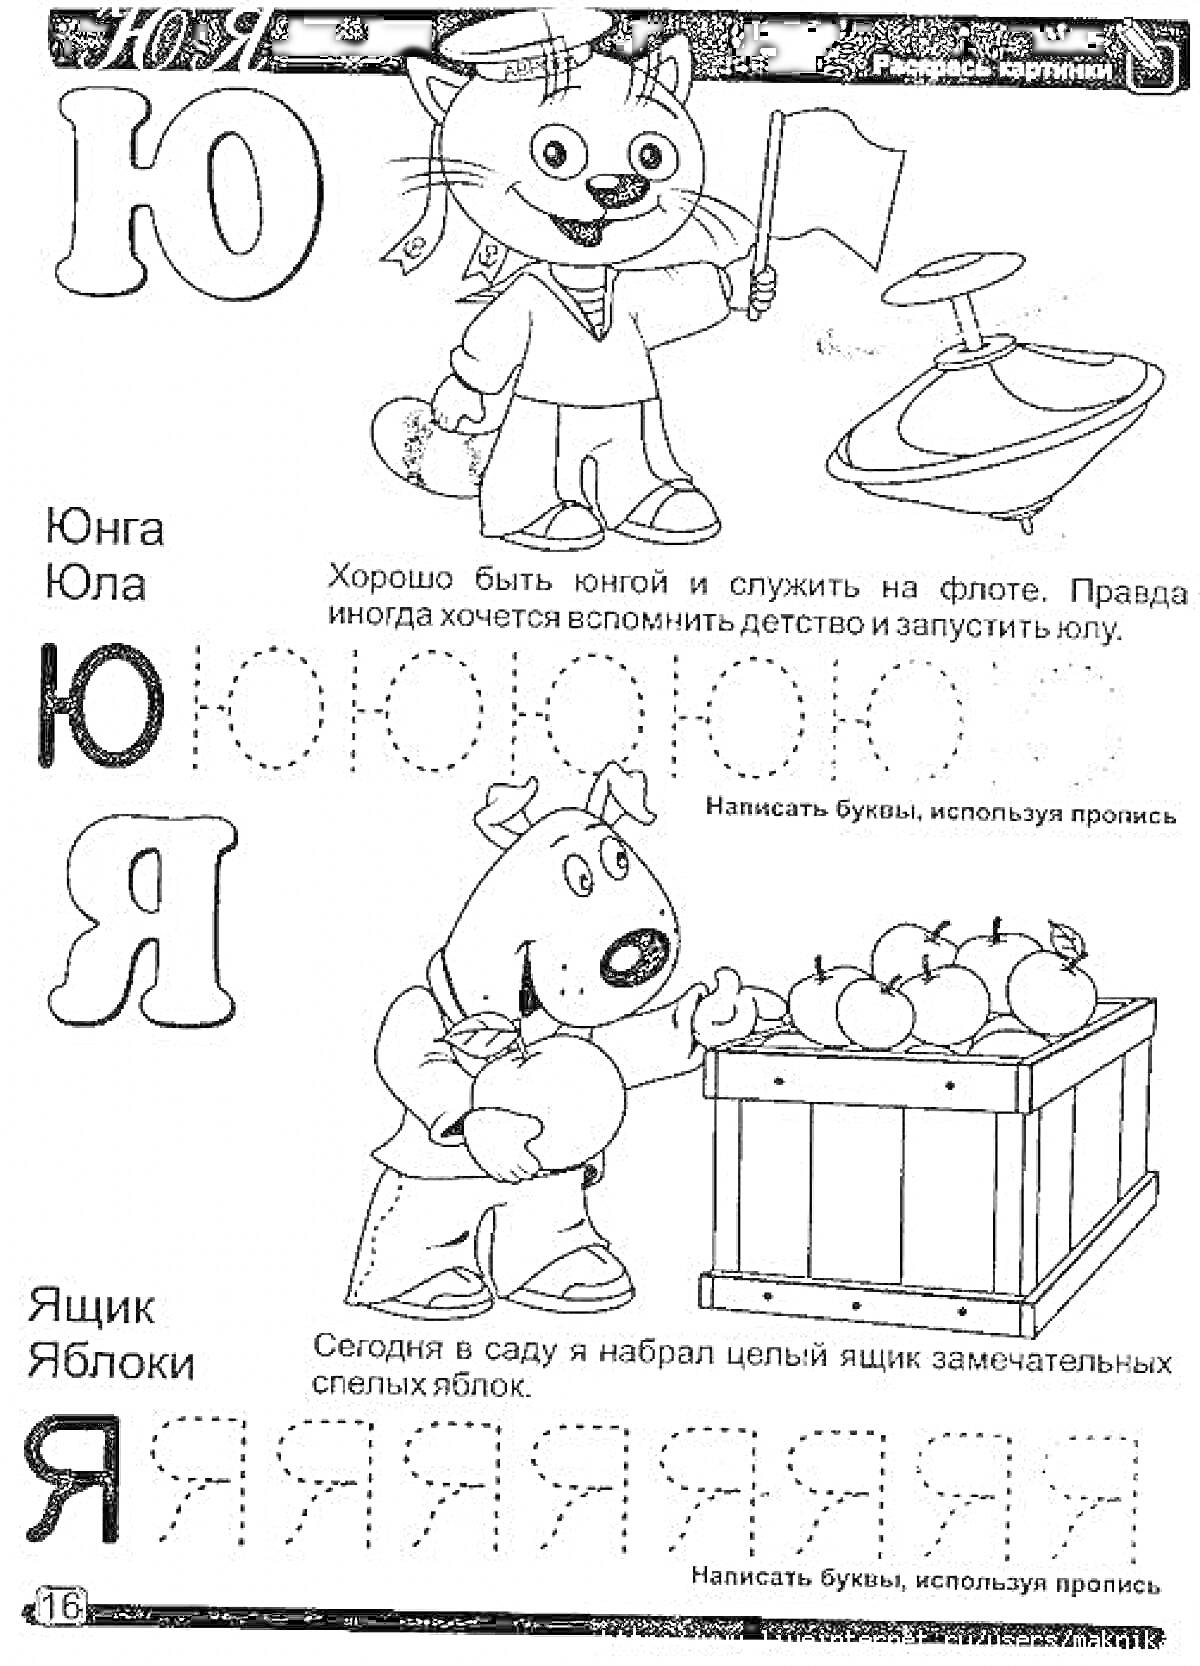 Раскраска Раскраска для детей с буквами Ю и Я, изображениями юнги с флагом, вёсла, собаки, ящика с яблоками, а также заданиями для написания этих букв